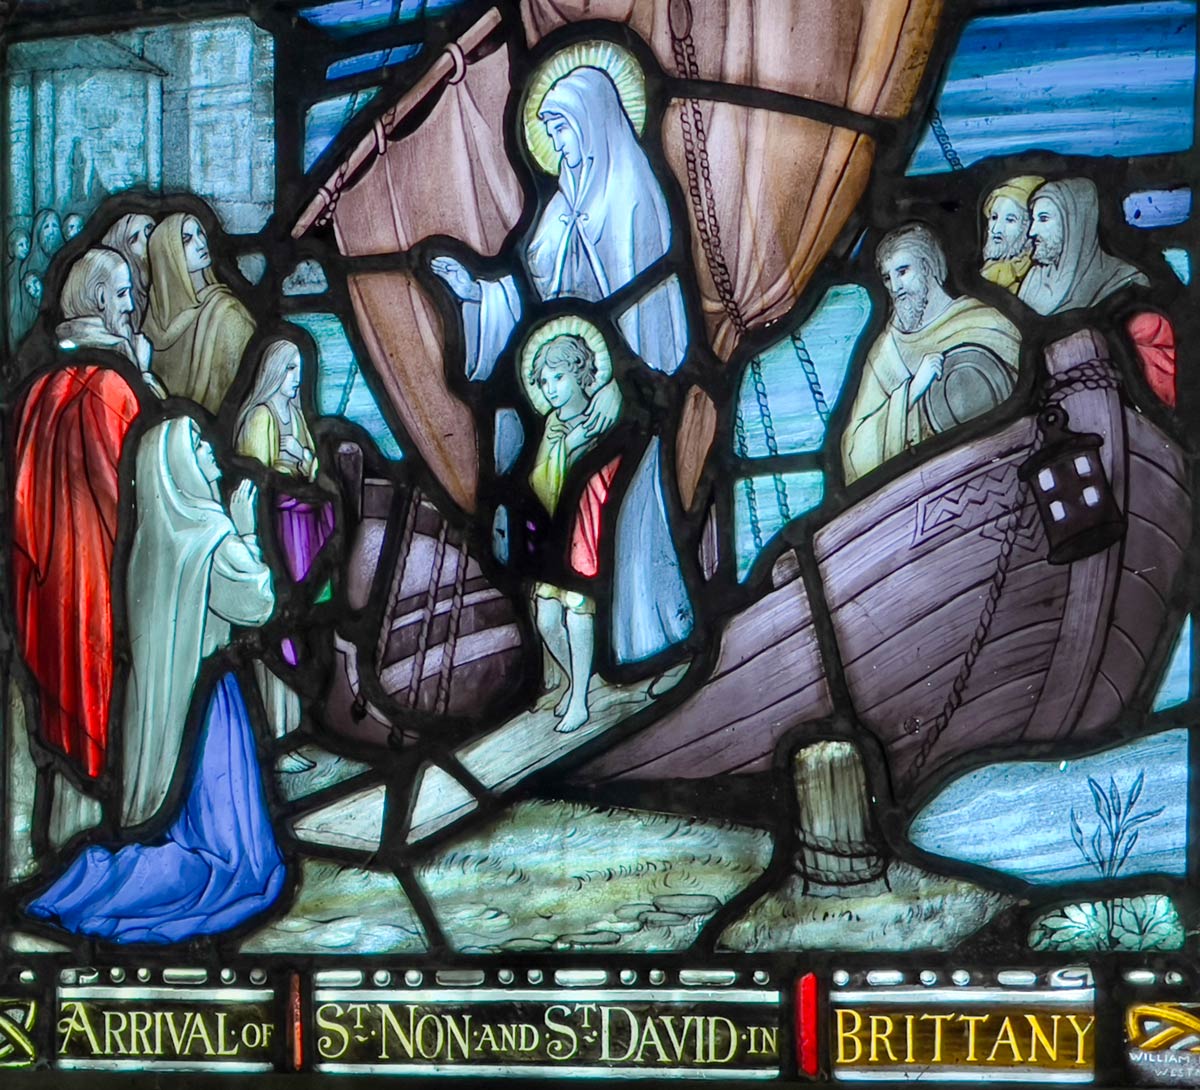 نافذة زجاجية ملونة تظهر وصول القديس نون وسانت ديفيد في بريتاني ، كنيسة سانت نون ، سانت ديفيد